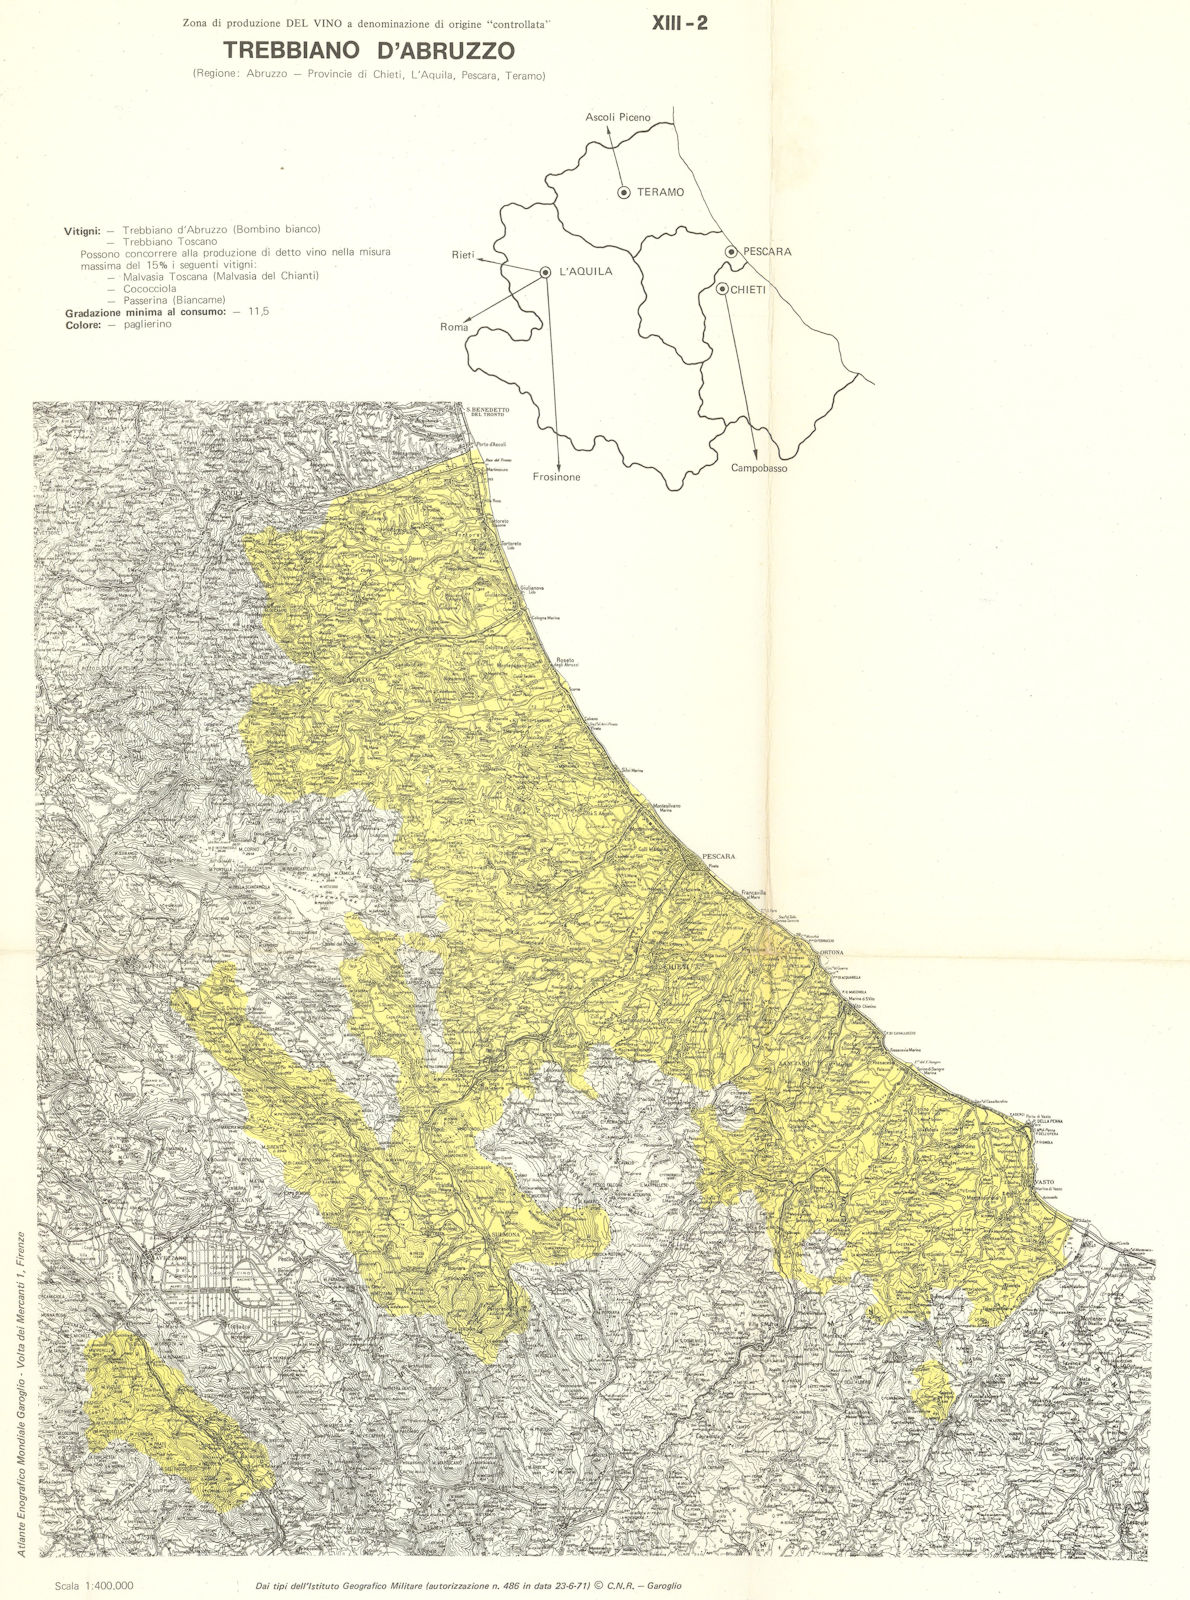 Italy wine. Trebbiano d'Abruzzo DOC. Chieti, l'Aquila, Pescara, Teramo 1976 map